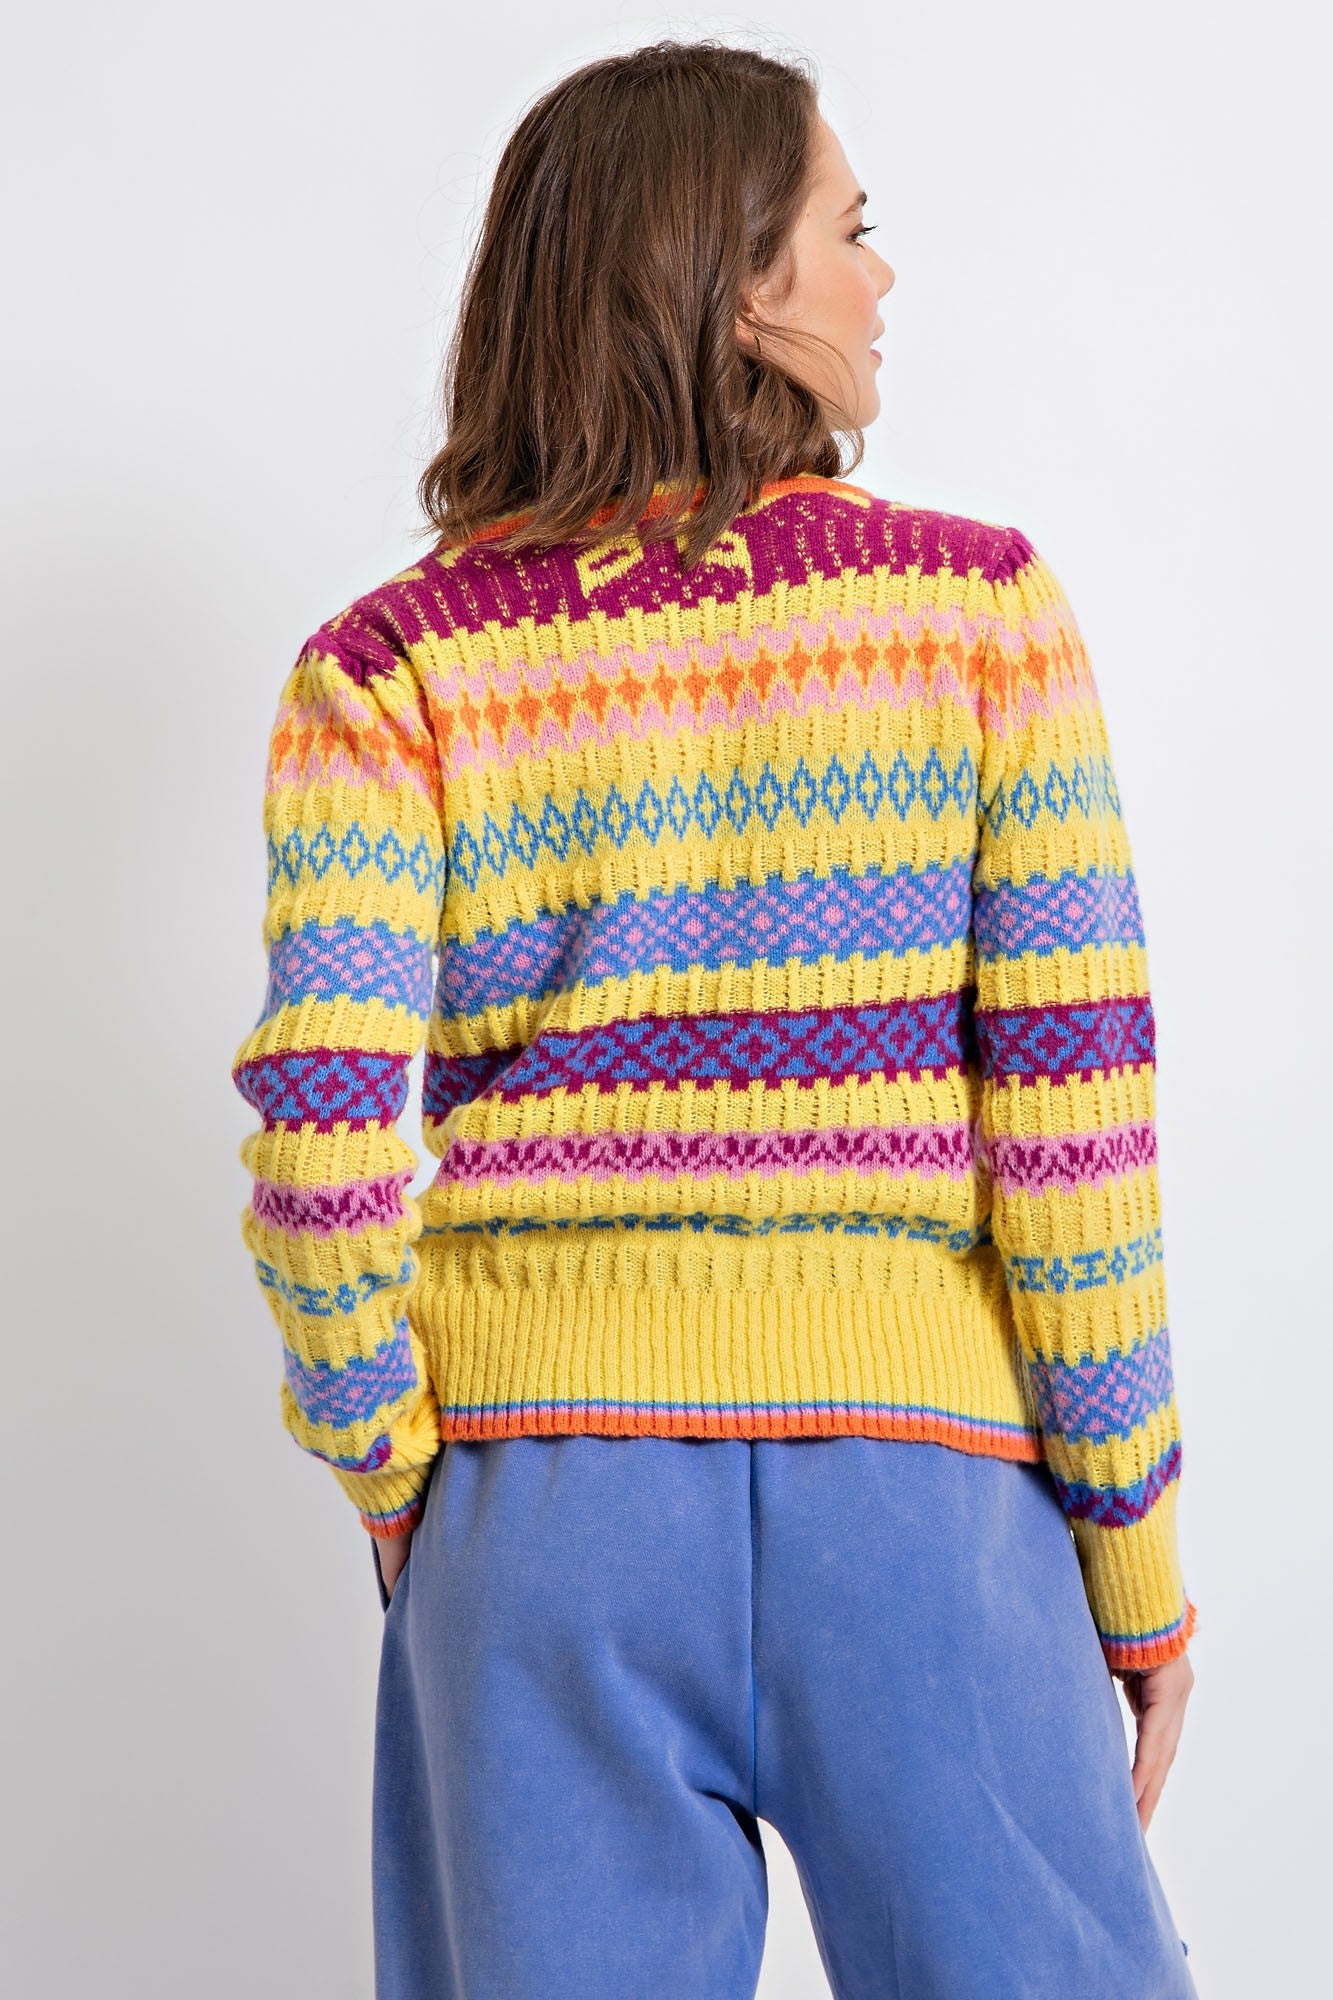 Sunshiney Yellow Striped Sweater